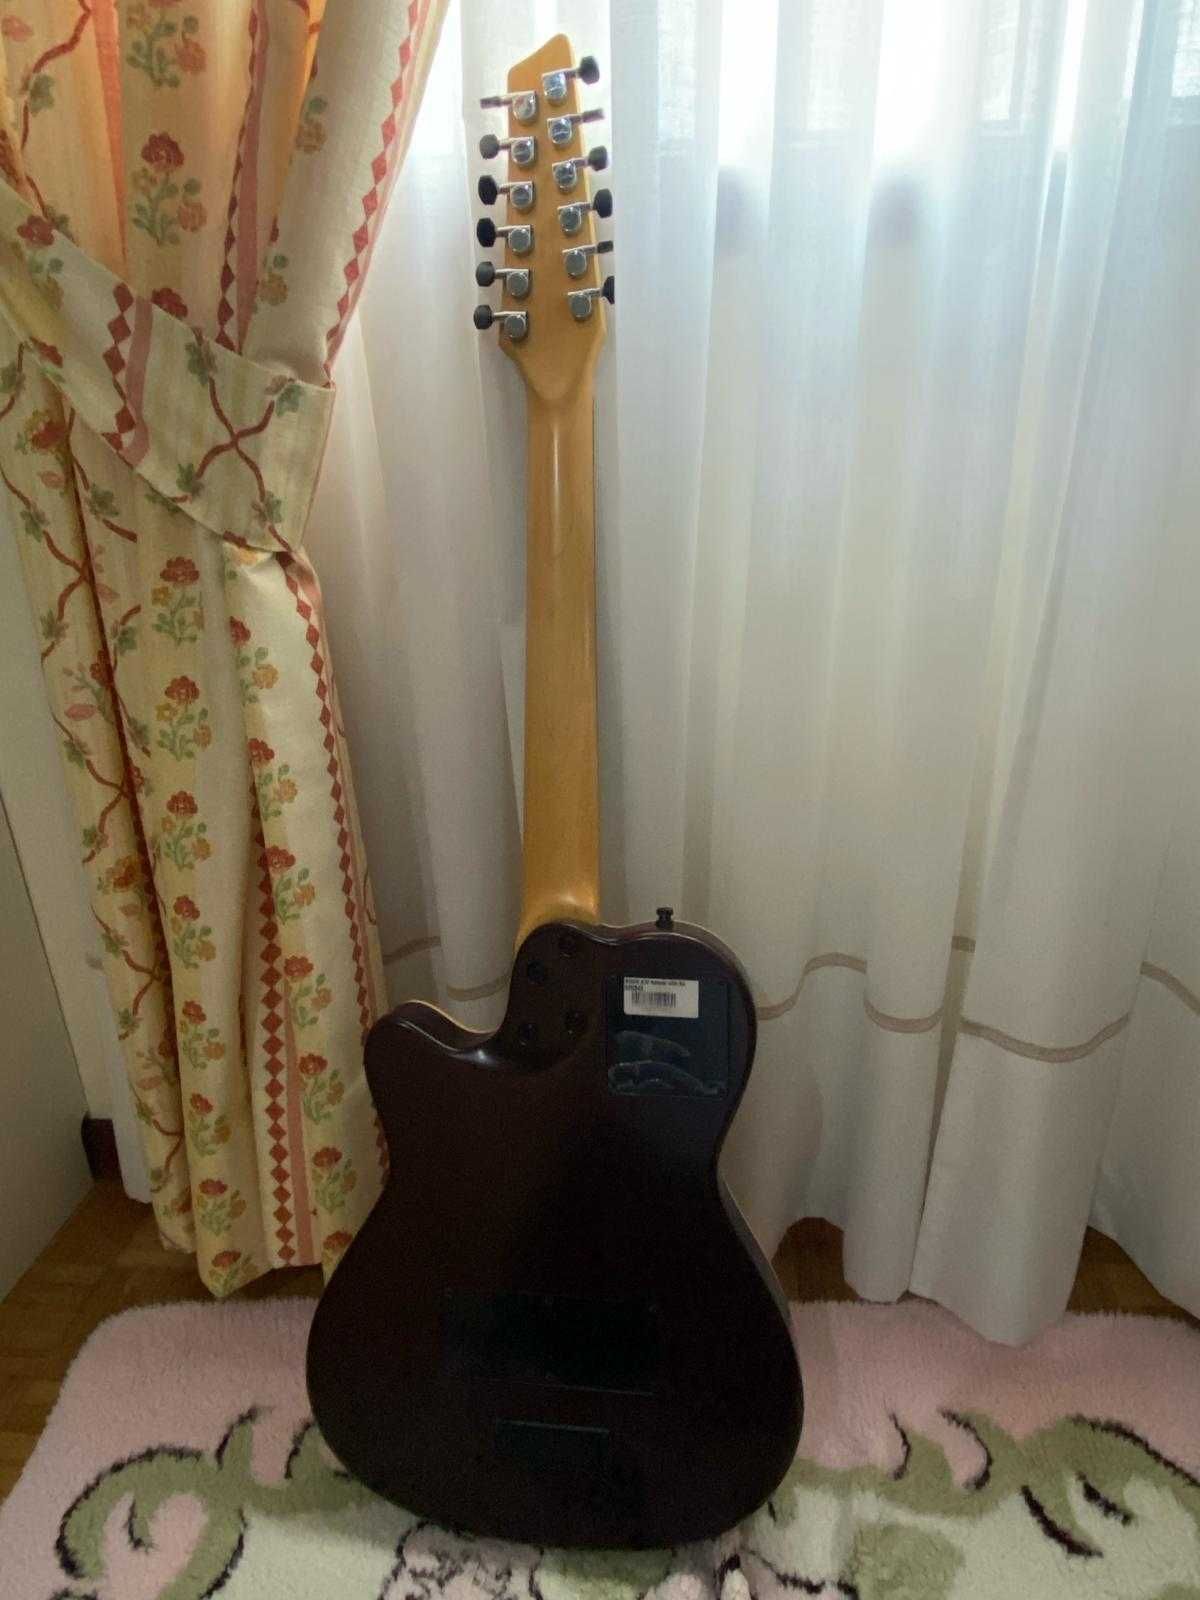 Guitarra 12 cordas Godin A12 (baixa de preço de 200€, para despachar)